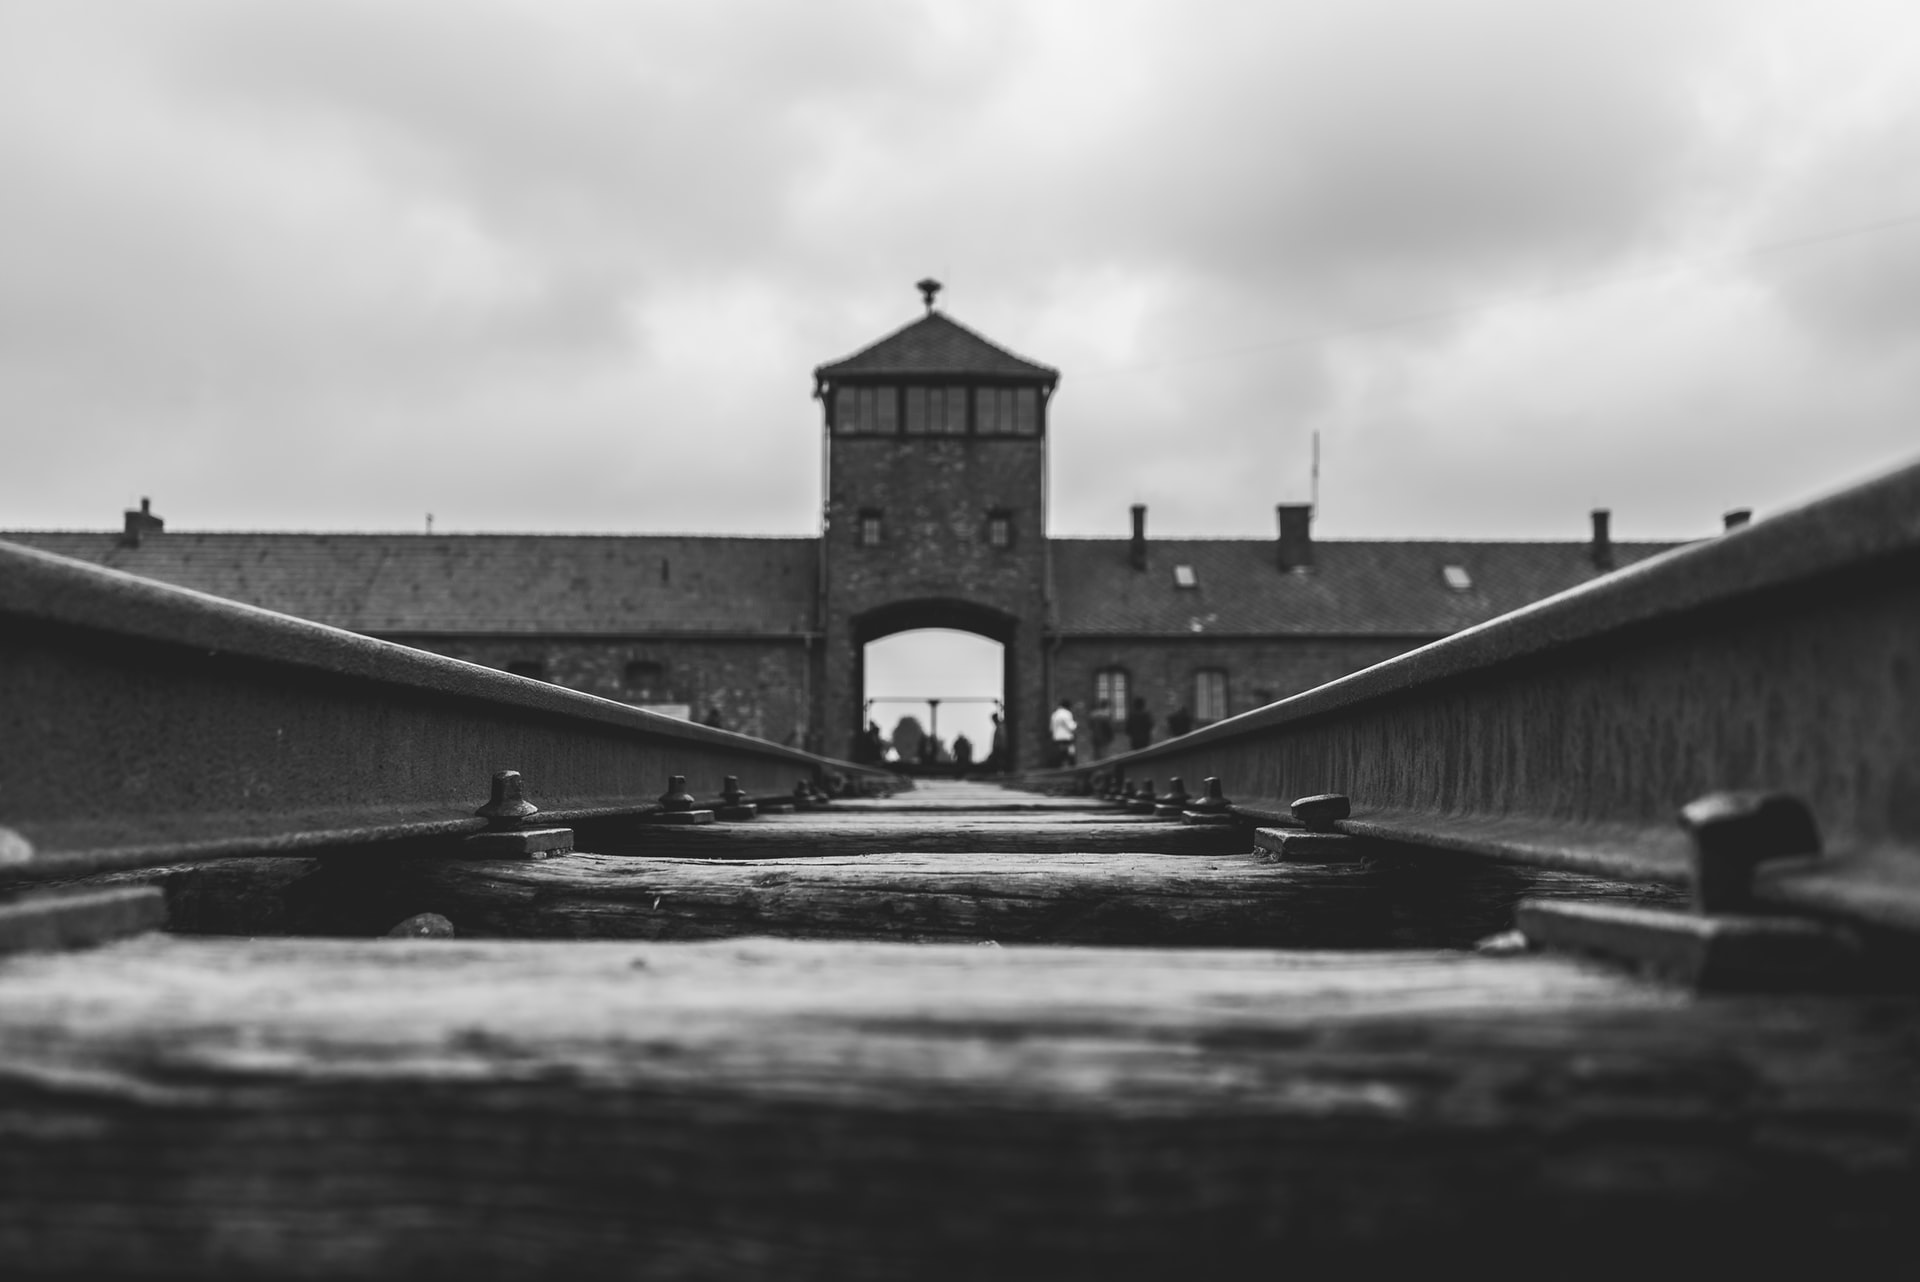 Bild von Auschwitz